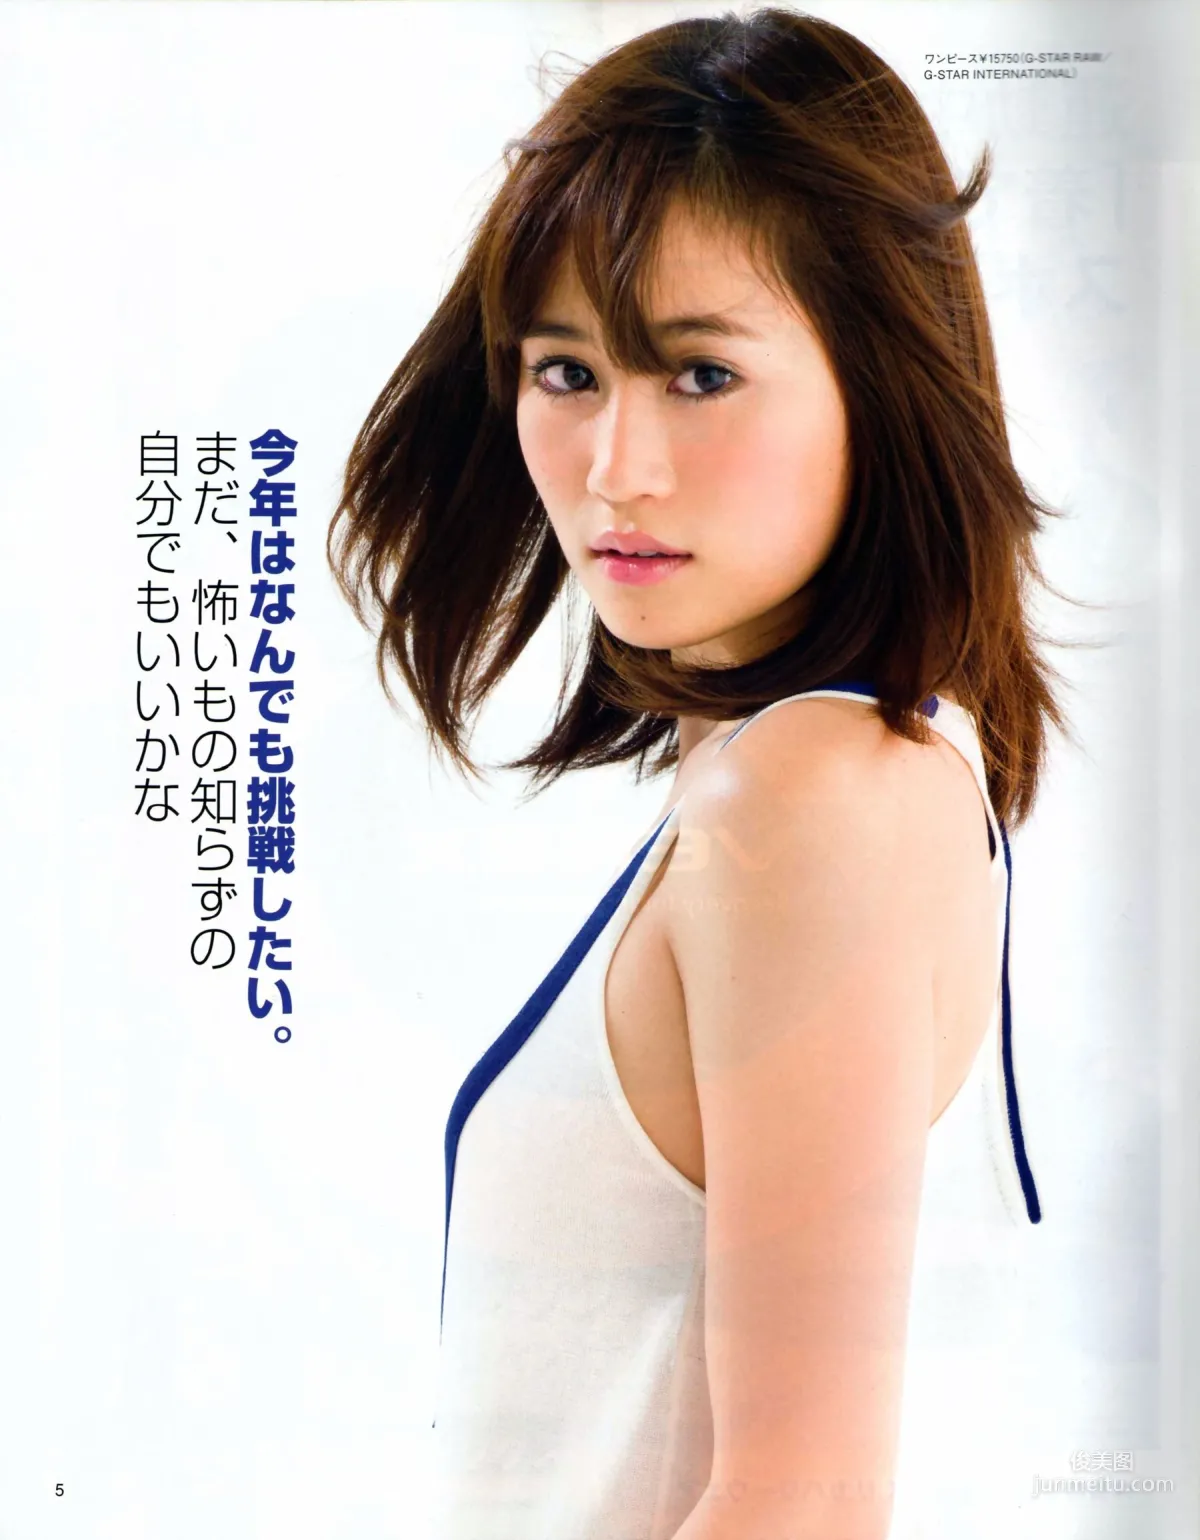 [Bomb Magazine] 2013年No.03 渡边麻友 秋元才加 AKB48 写真杂志33